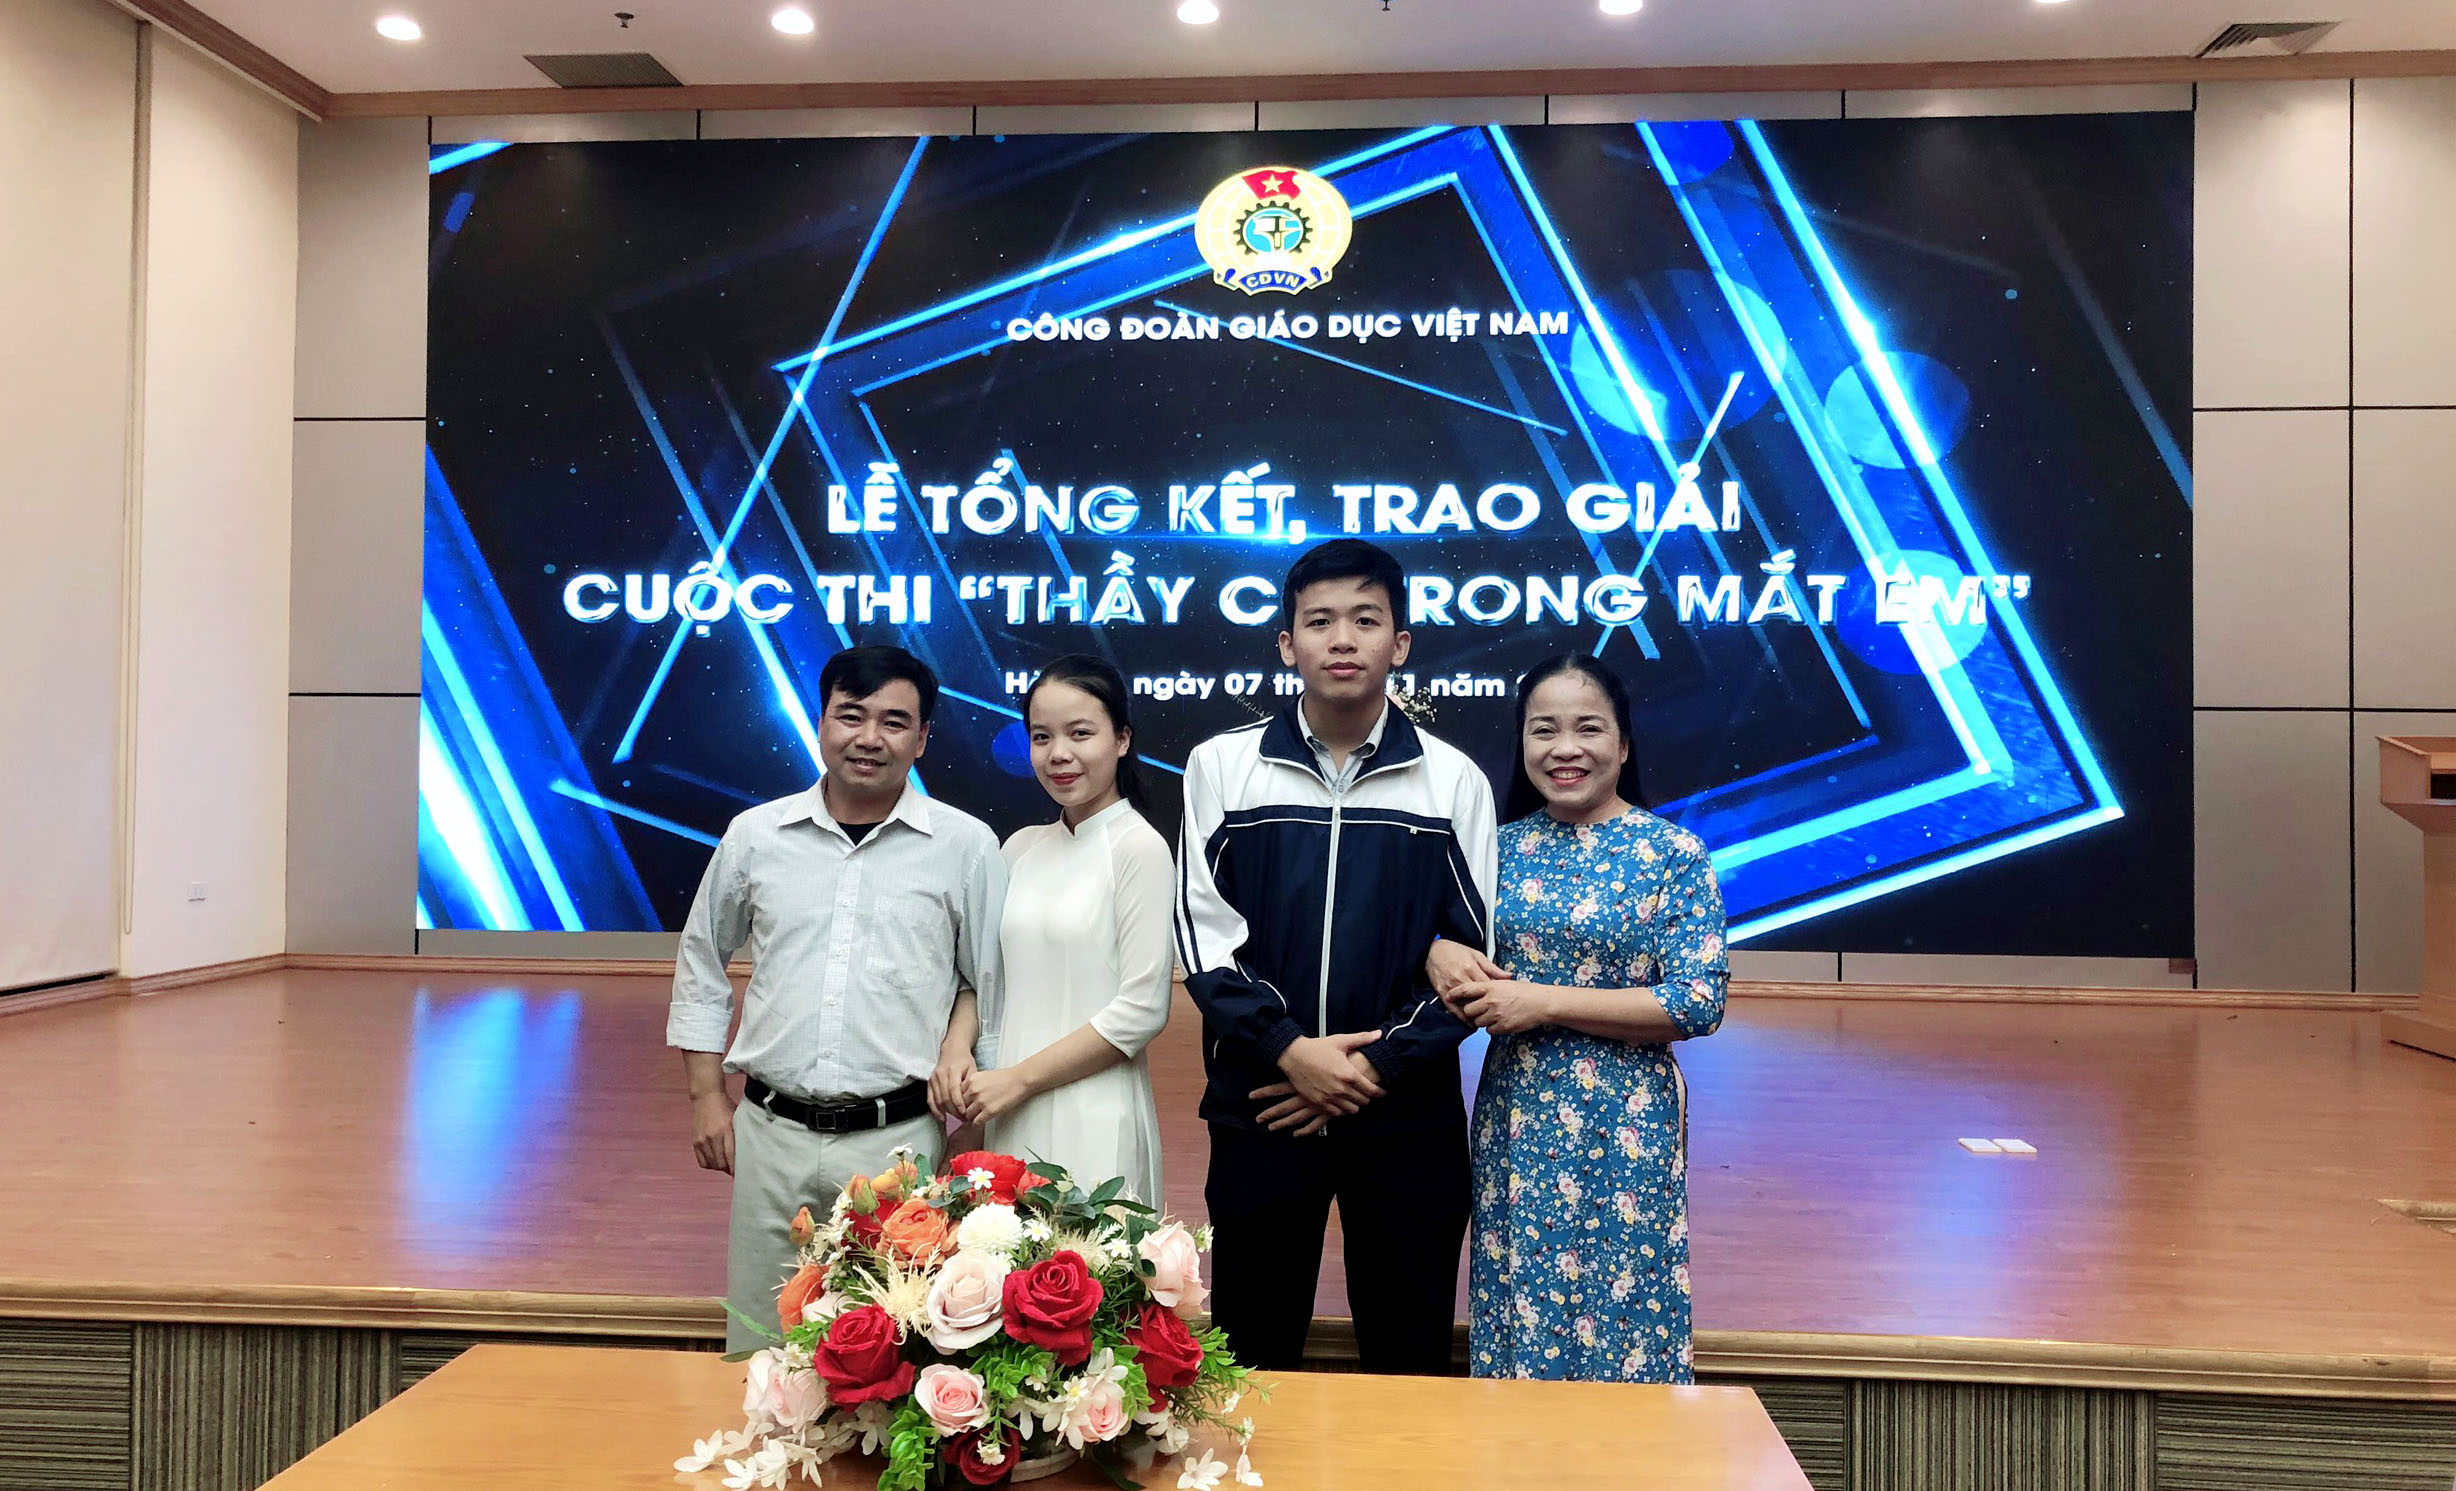 Cô giáo Trần Thị Minh Nguyệt, thầy giáo Trần Tuấn Anh và các học trò. Ảnh: PV.